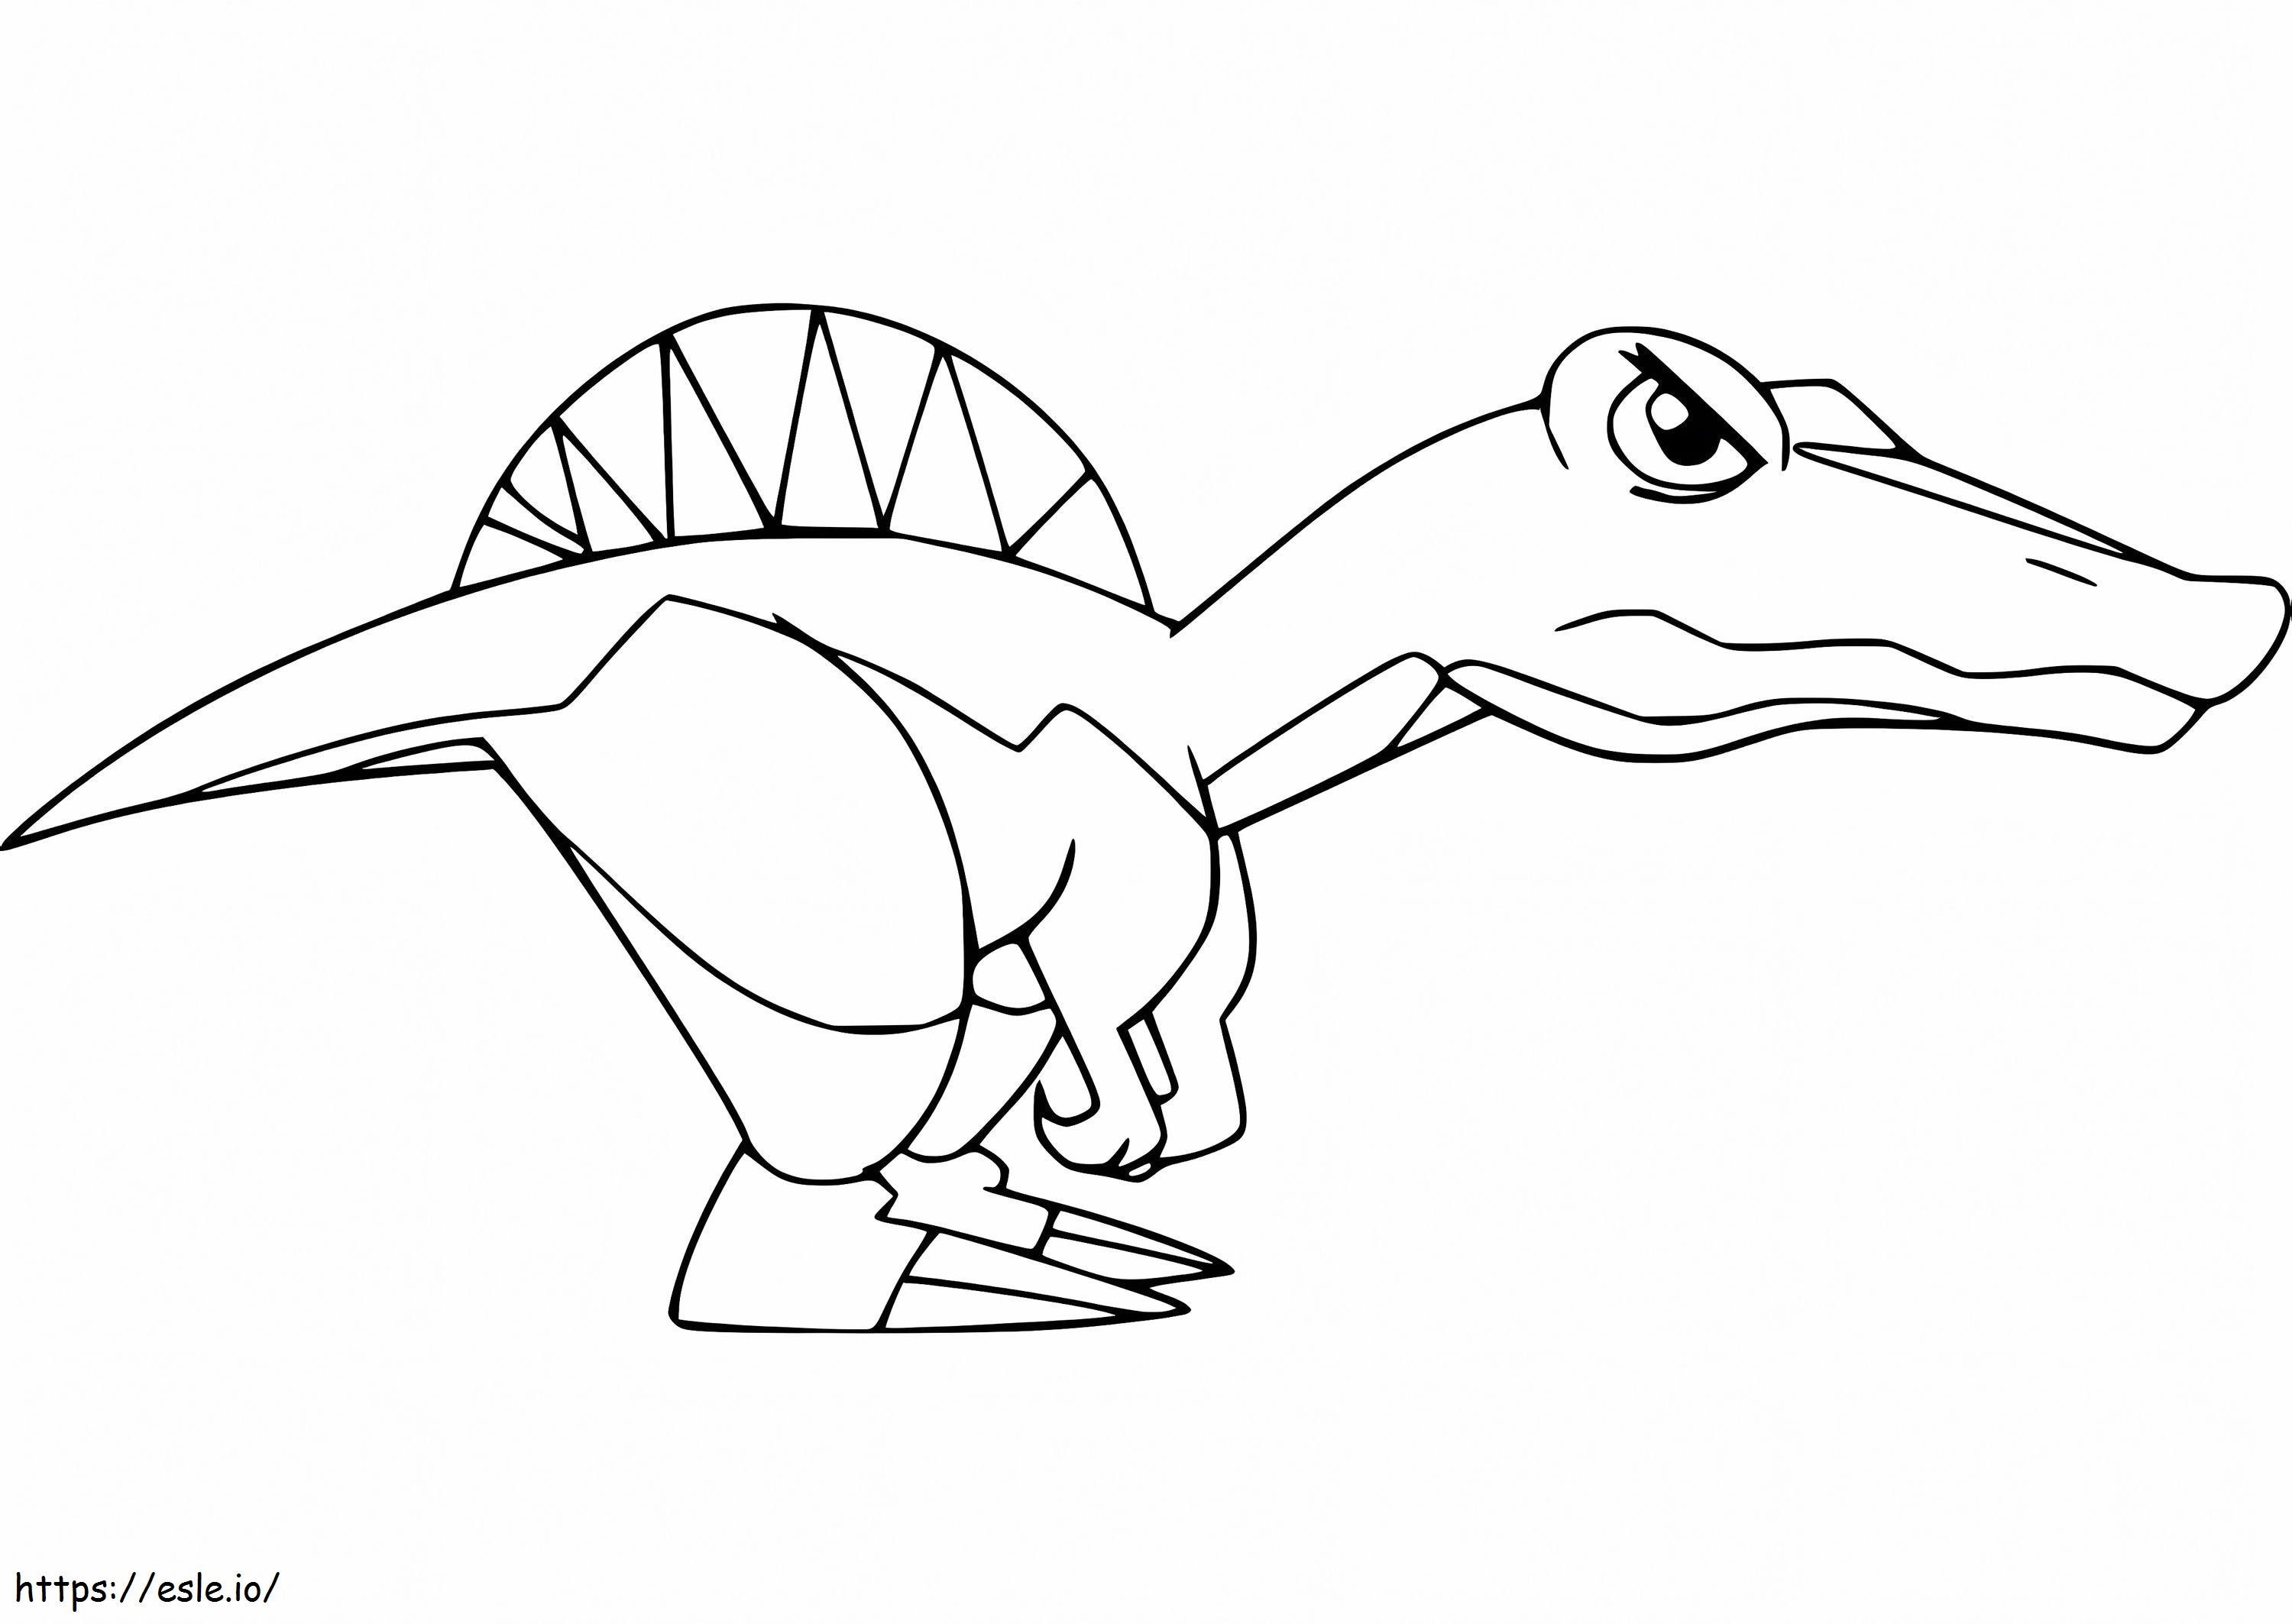 Espinossauro irritado dos desenhos animados para colorir